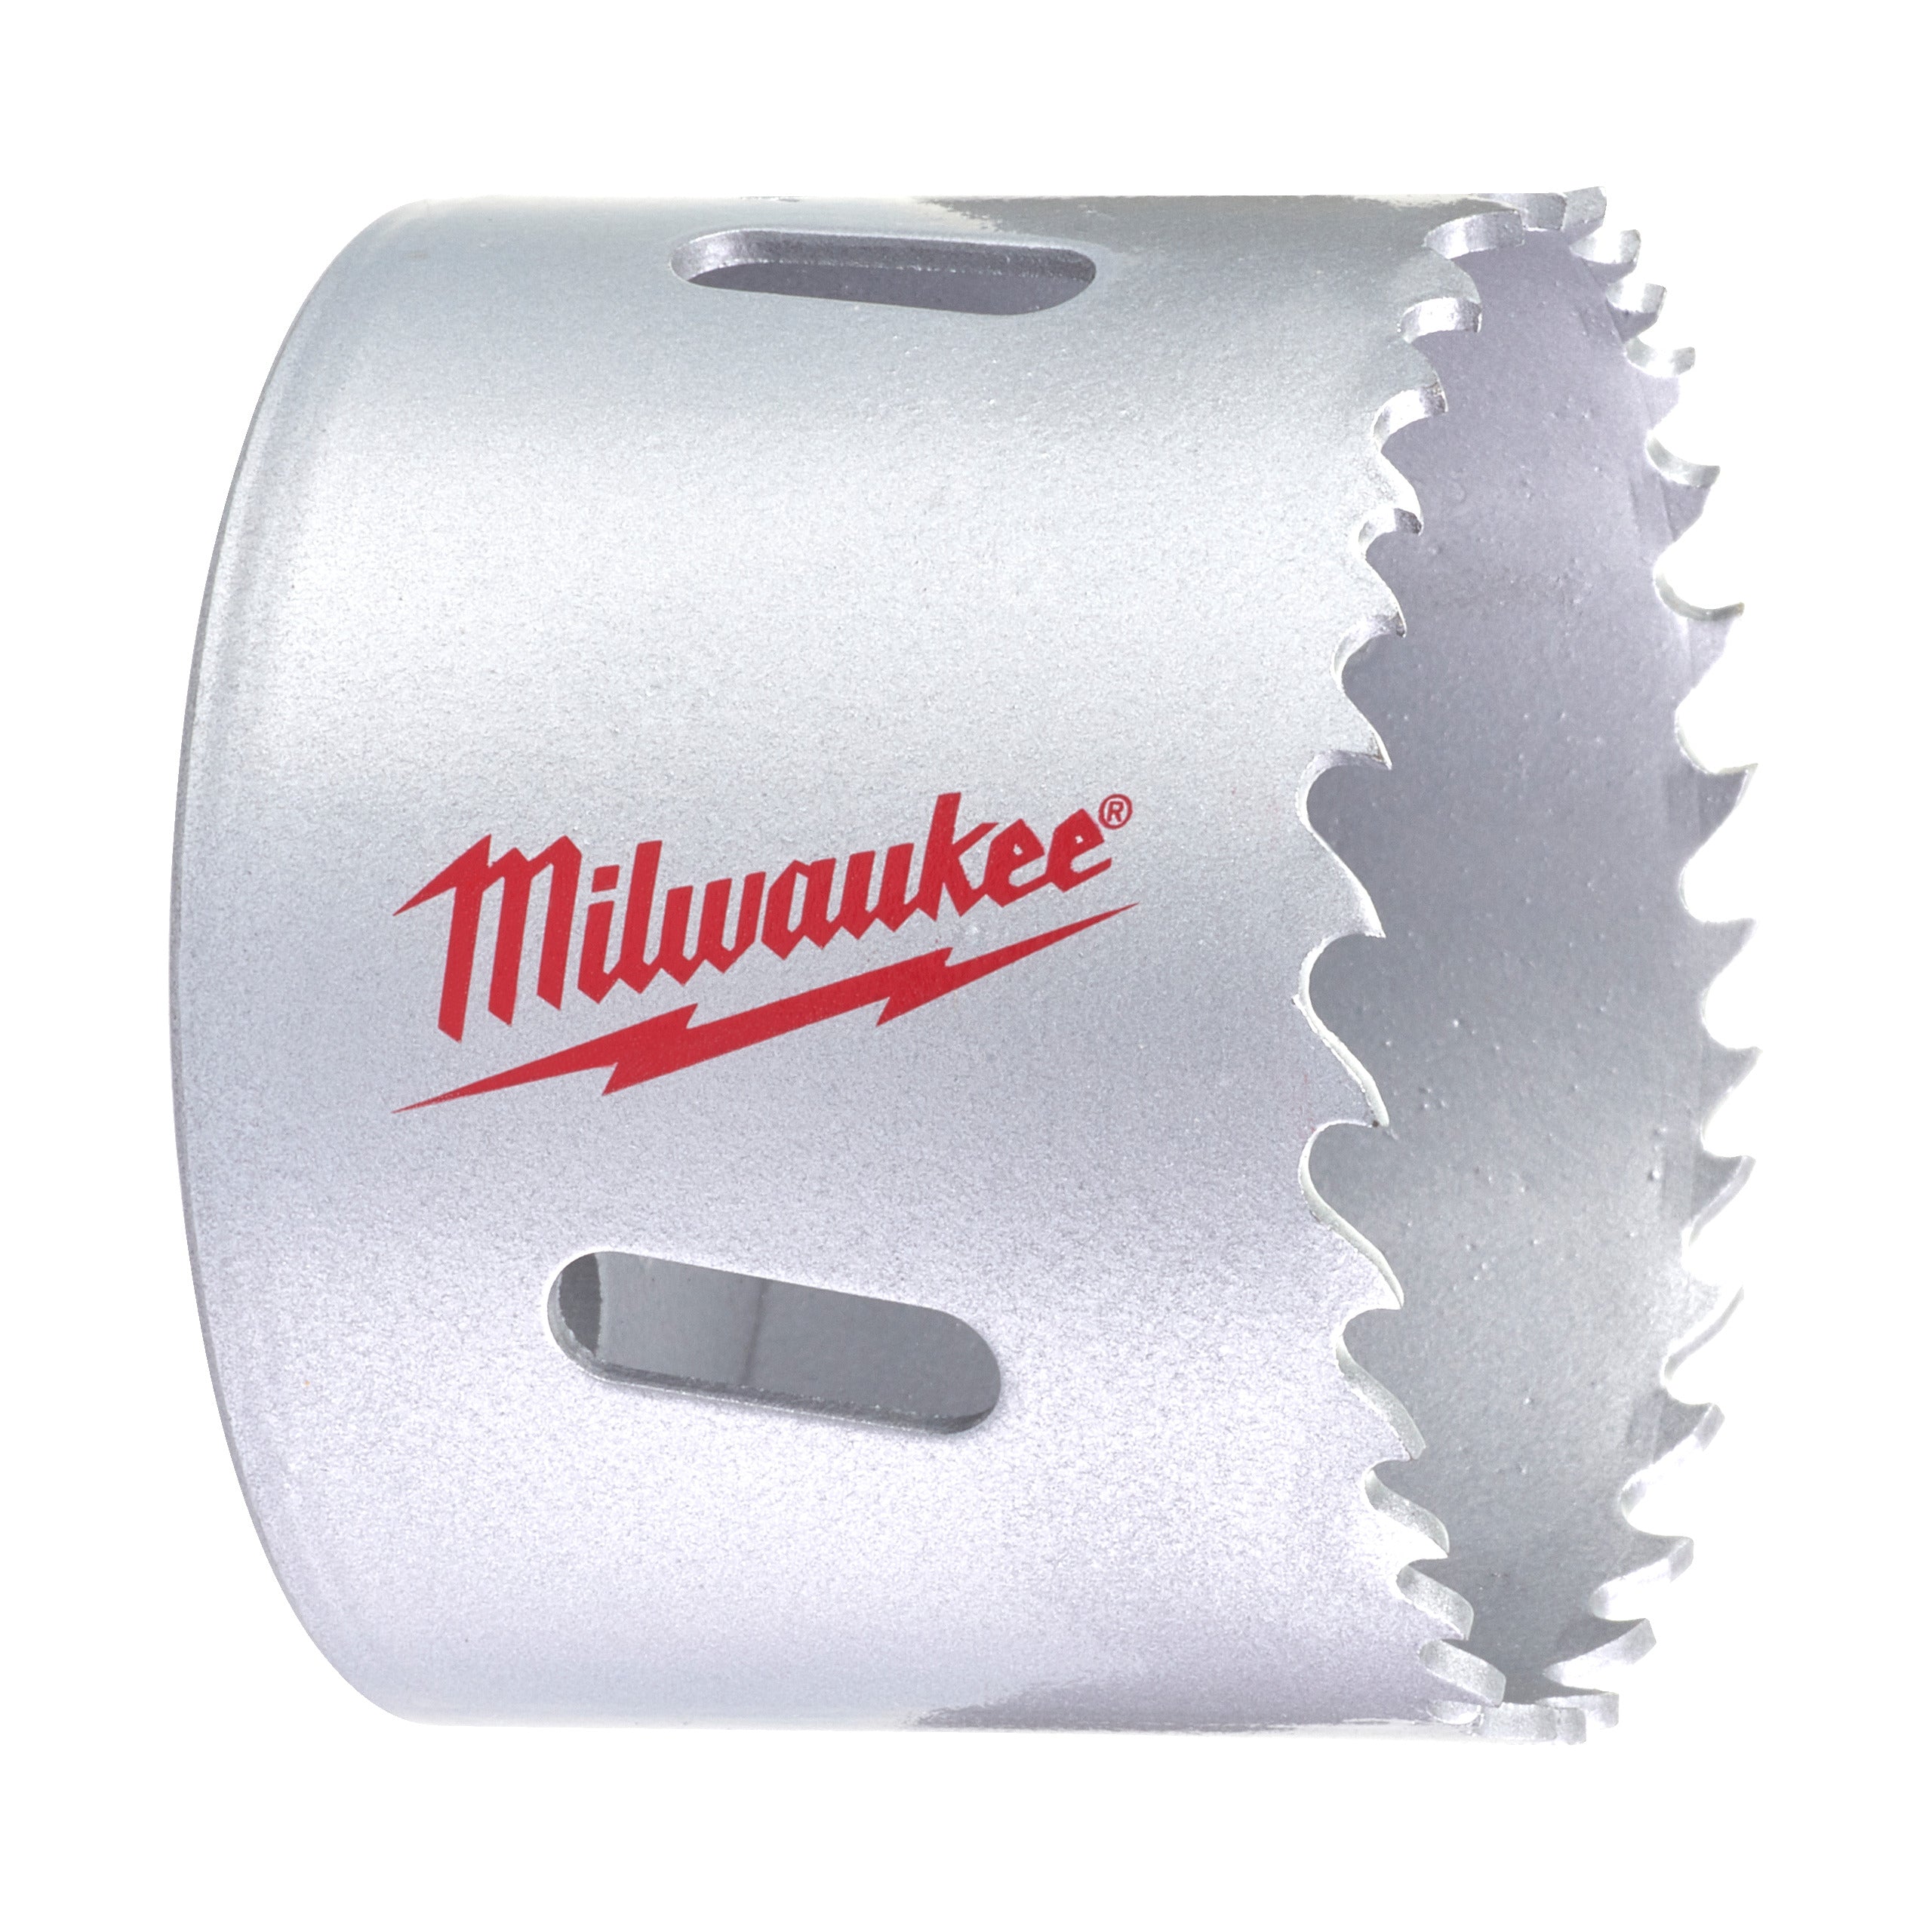 Carotă Milwaukee HOLE DOZER™ bi-metal pentru contractanți Ø56 mm 4932464691